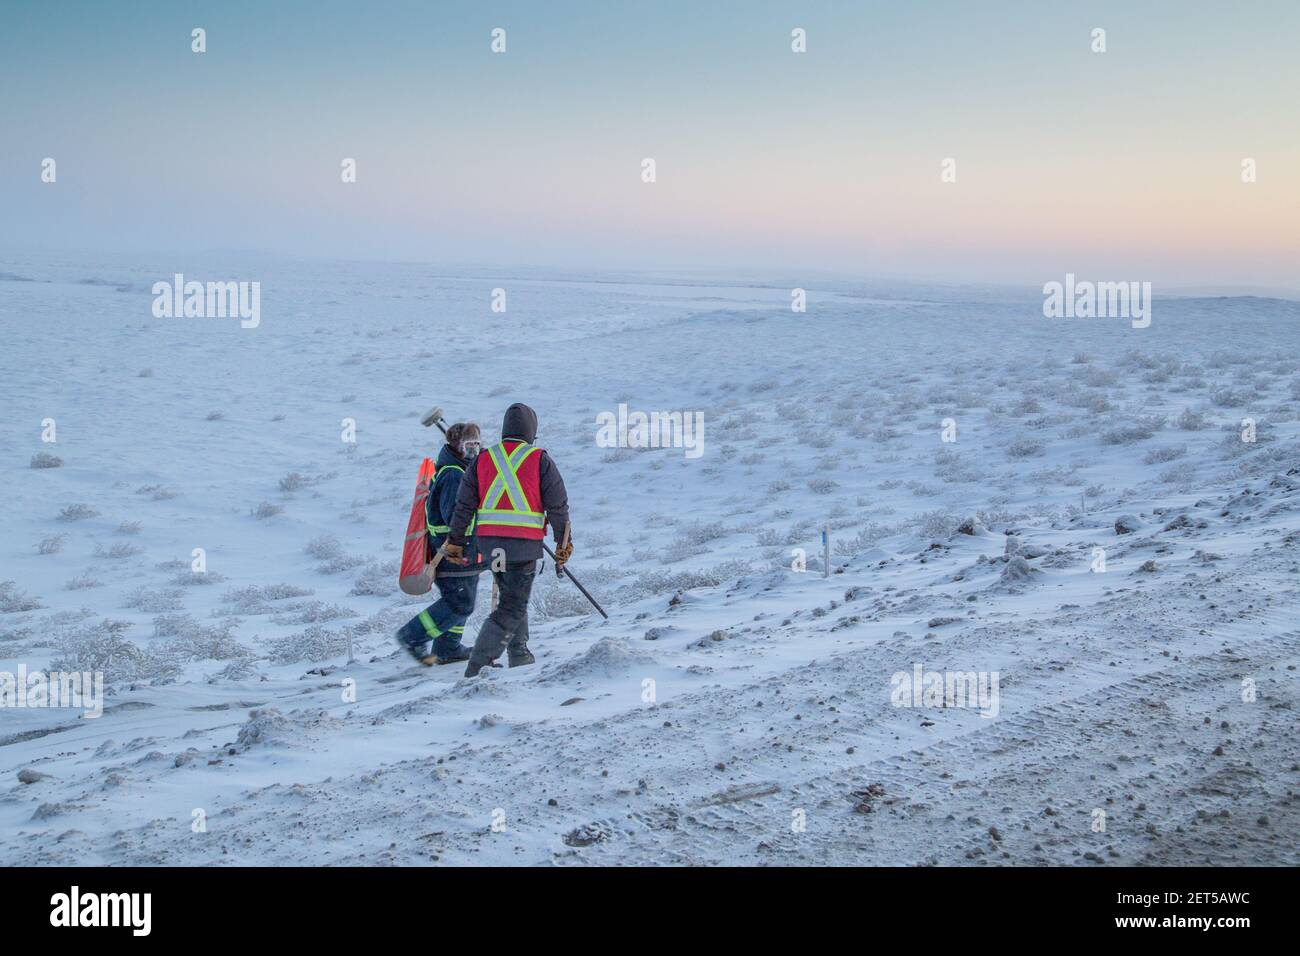 Deux travailleurs qui arpentent la route Inuvik-Tuktoyaktuk, construction hivernale, Territoires du Nord-Ouest, Arctique canadien. Banque D'Images